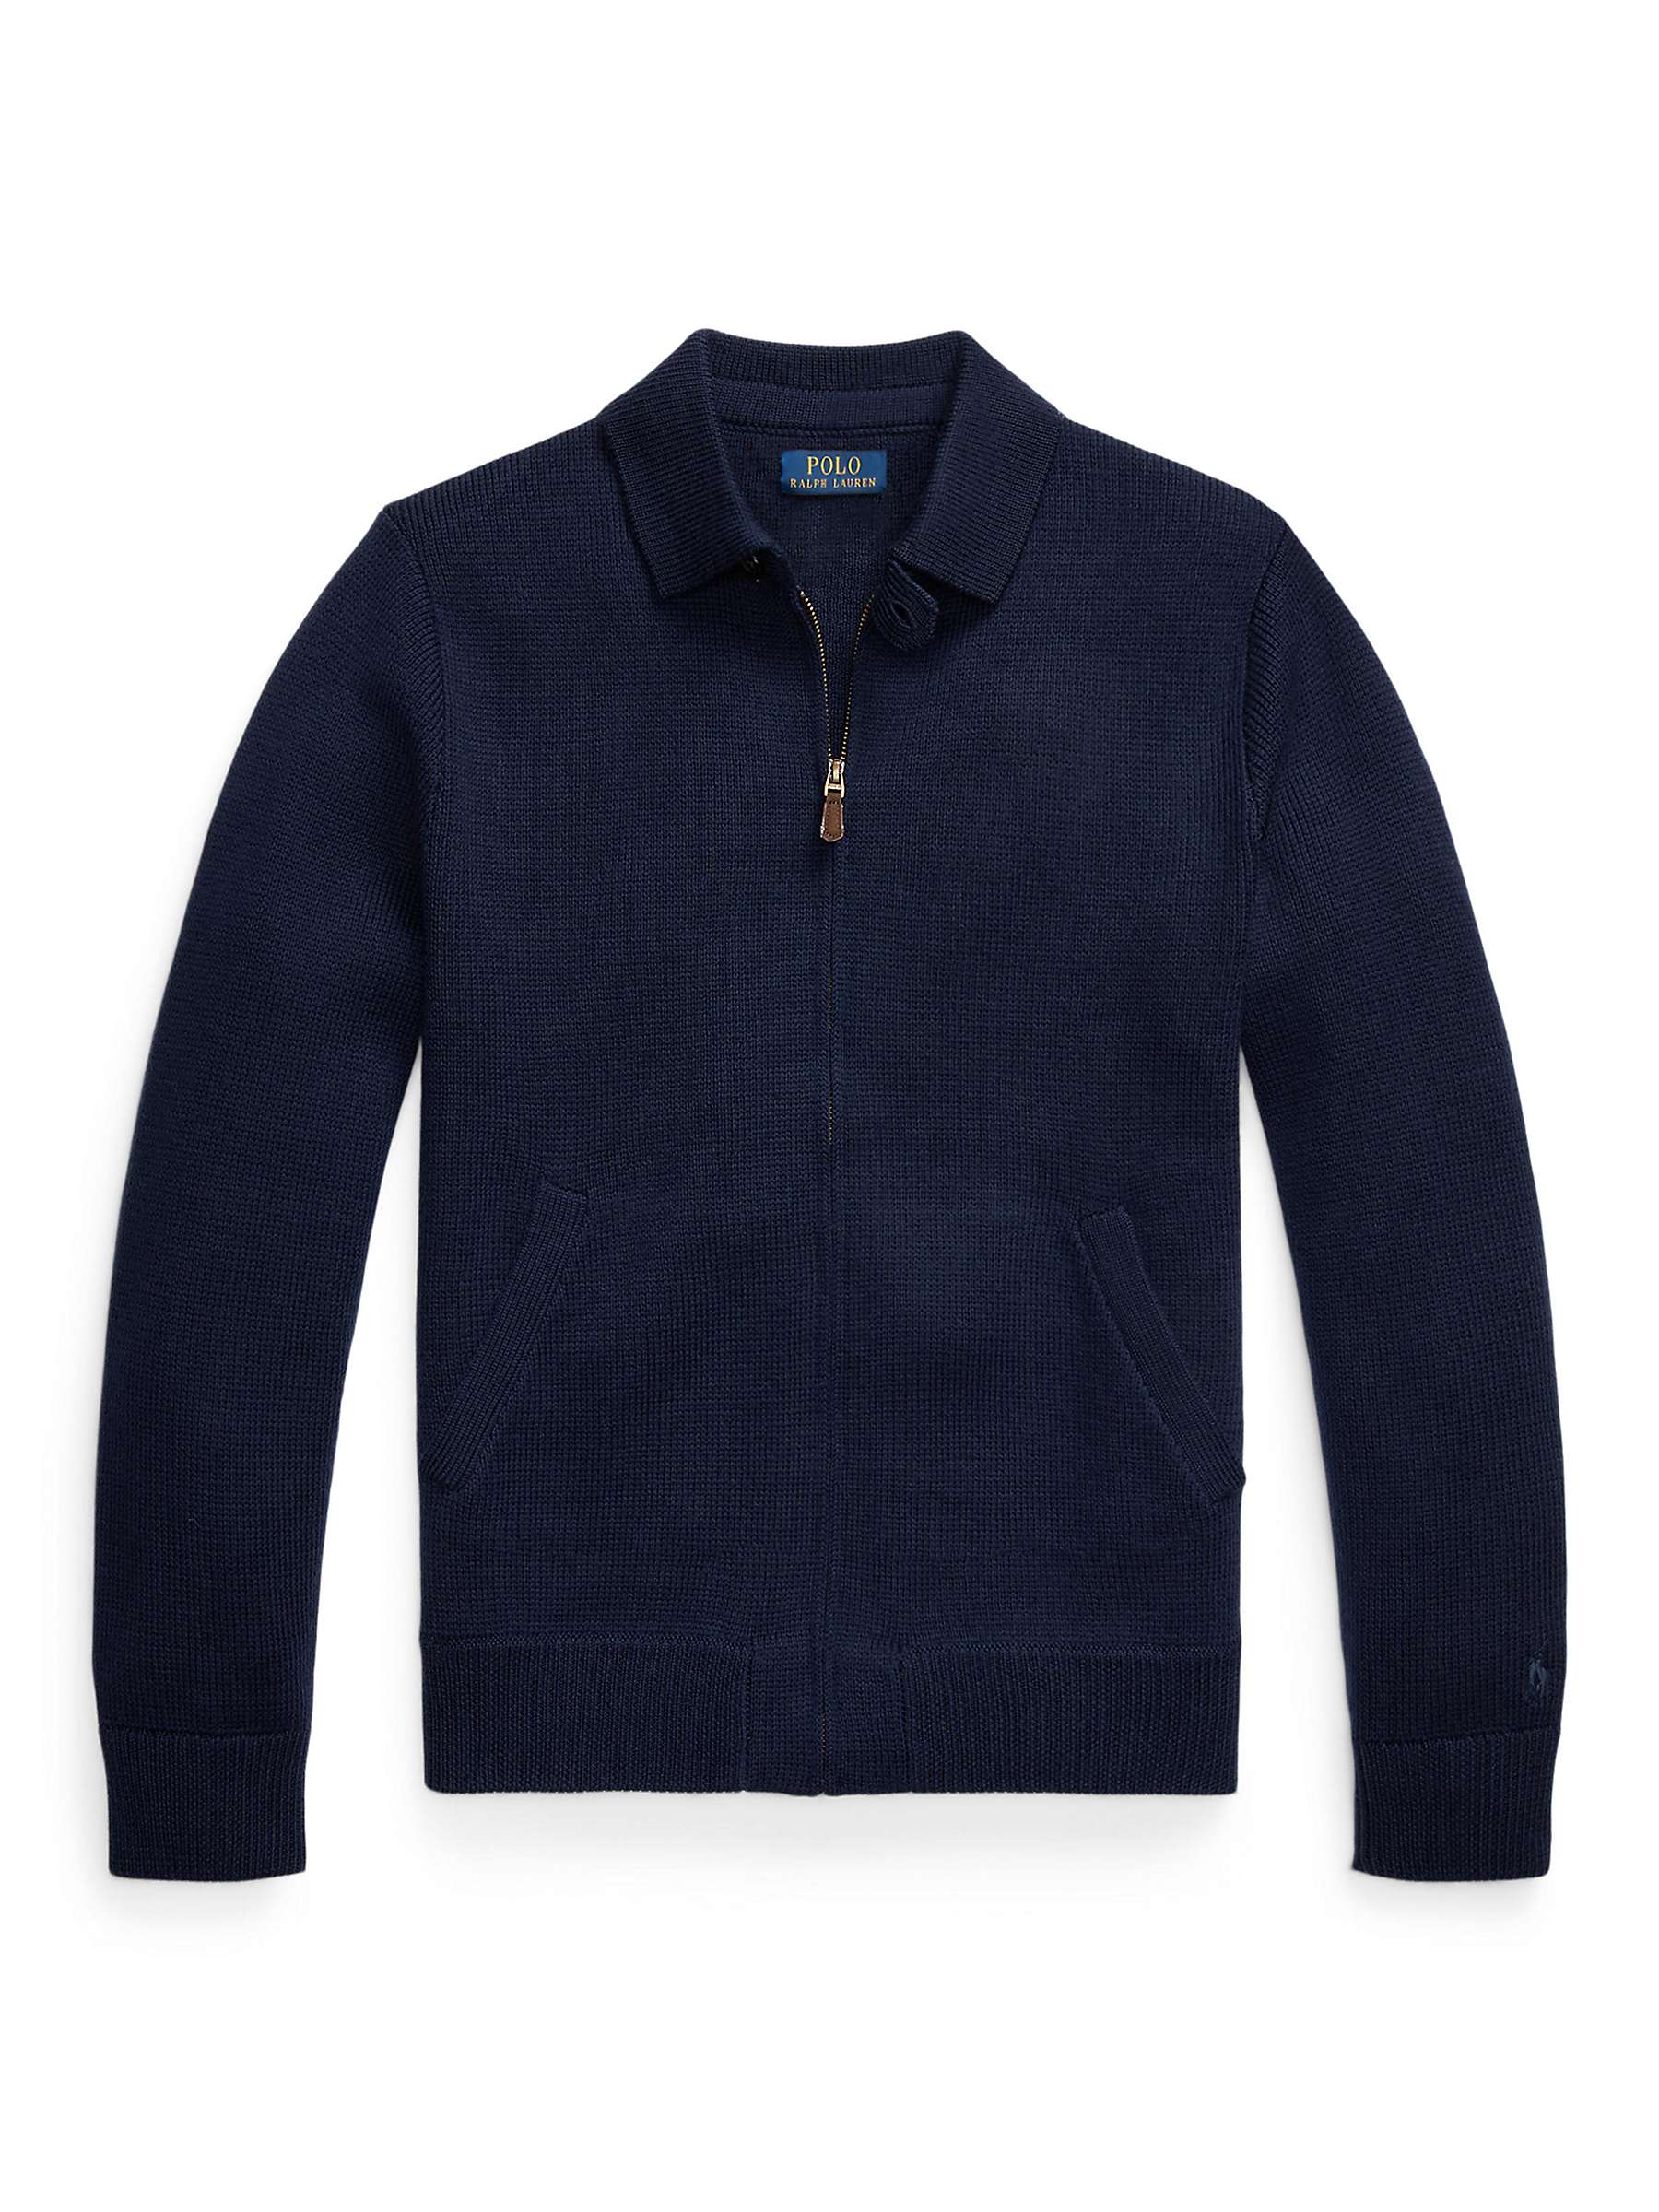 Buy Polo Ralph Lauren Wool Full-Zip Sweater, Hunter Navy Online at johnlewis.com